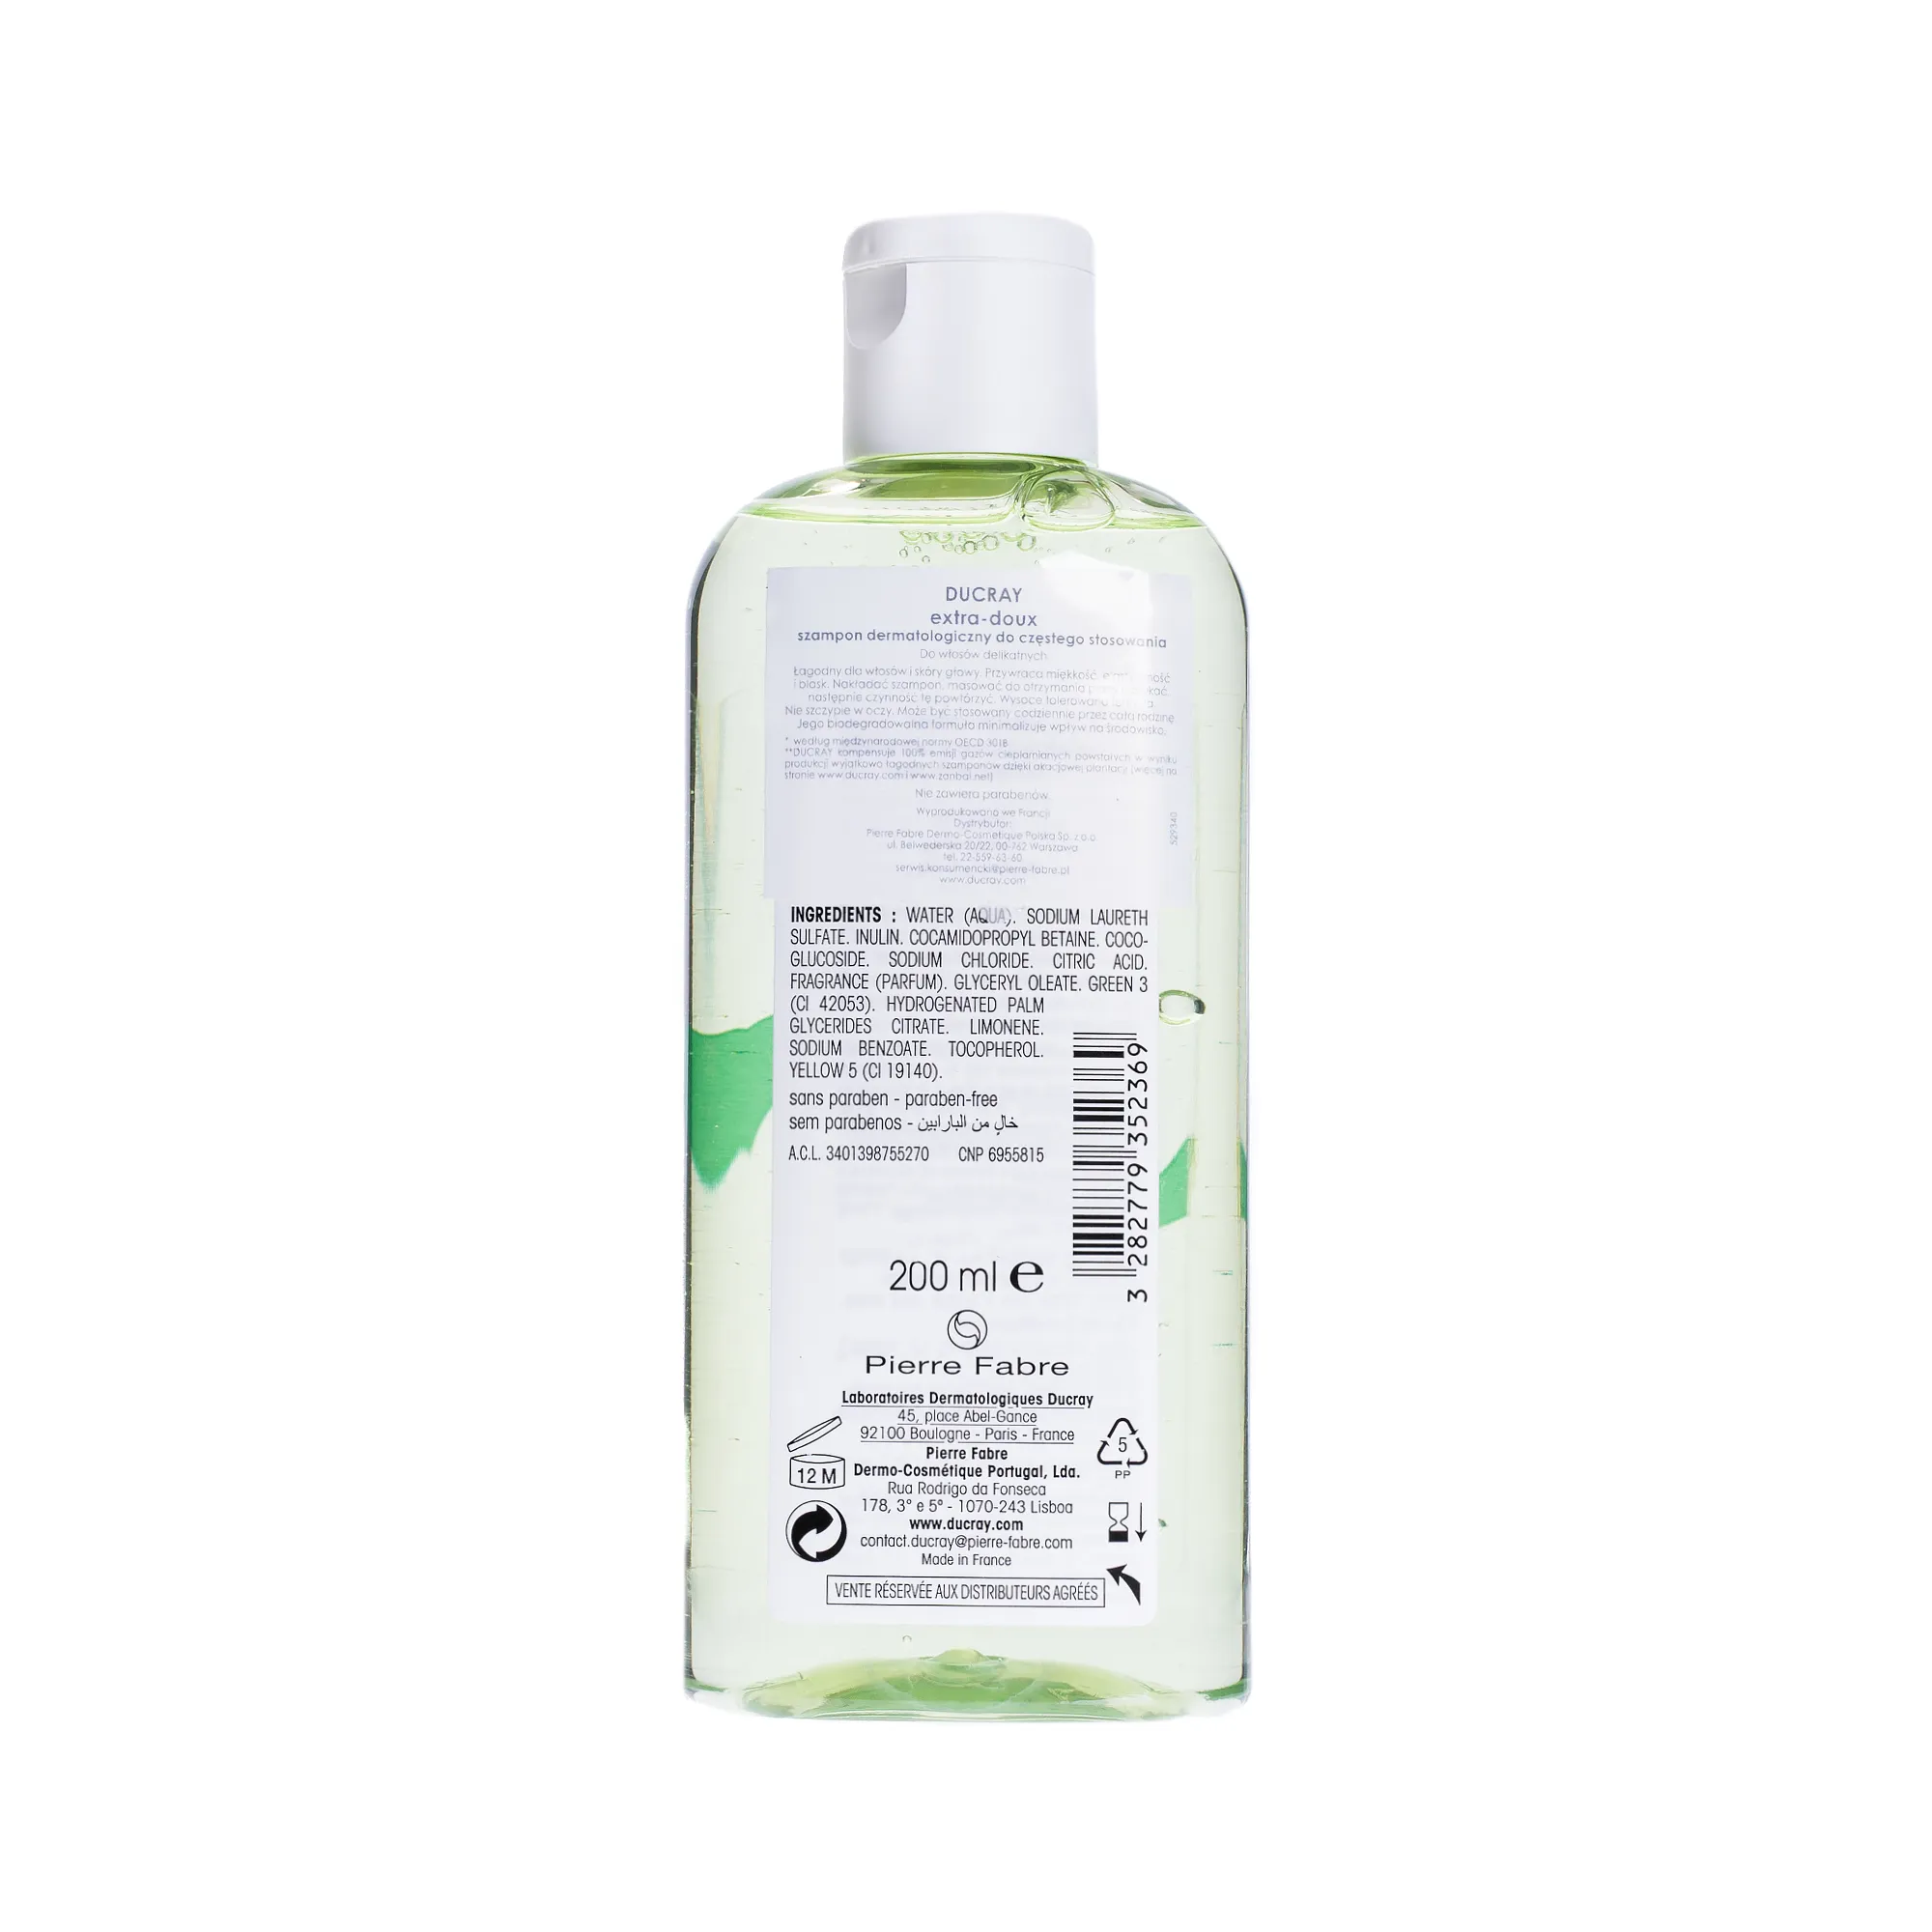 Ducray Extra Doux, szampon dermatologiczny do częstego stosowania, 200 ml 